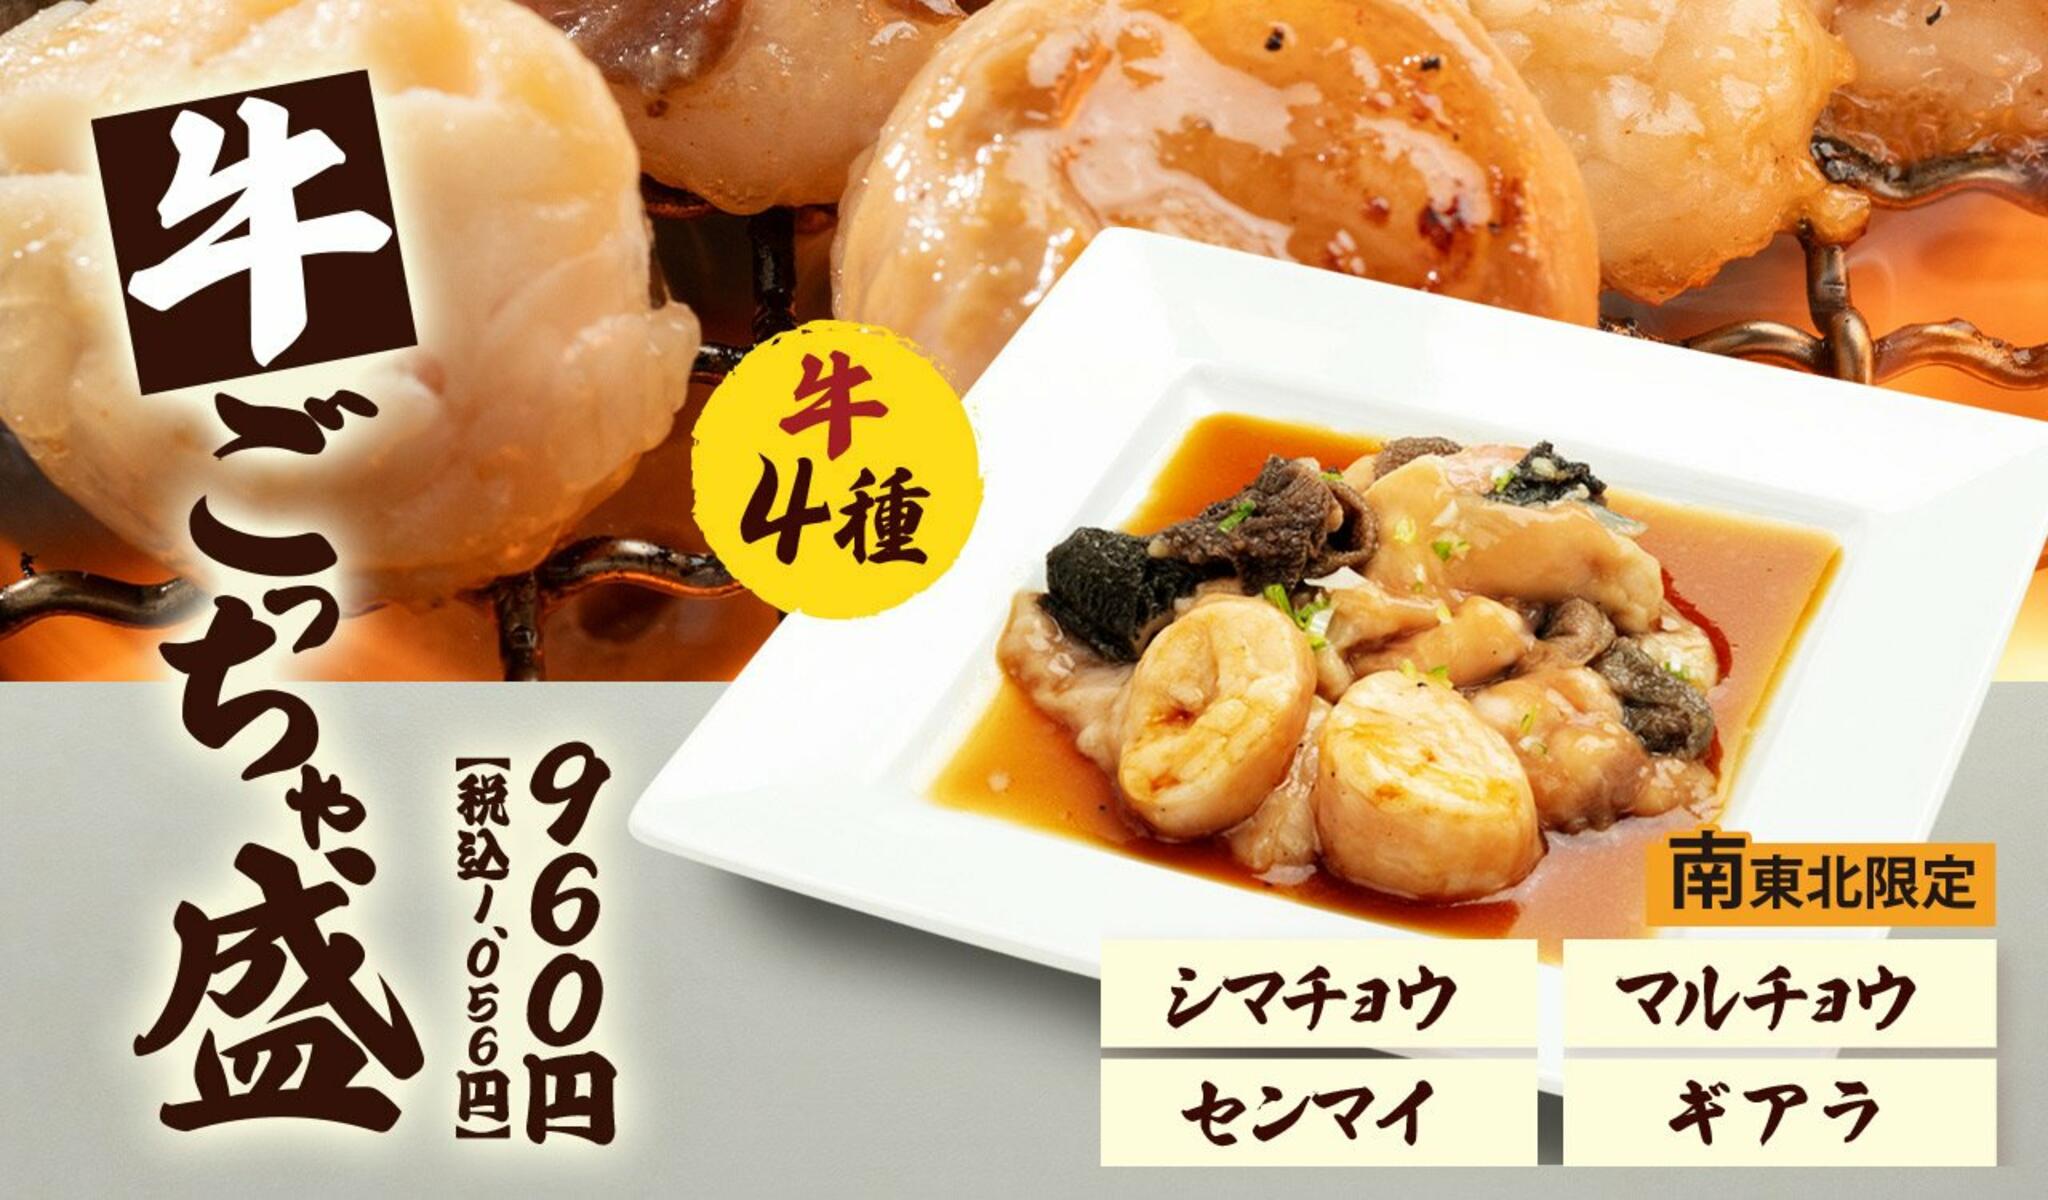 焼肉冷麺やまなか家 西多賀店からのお知らせ(【期間限定おすすめメニュー】)に関する写真